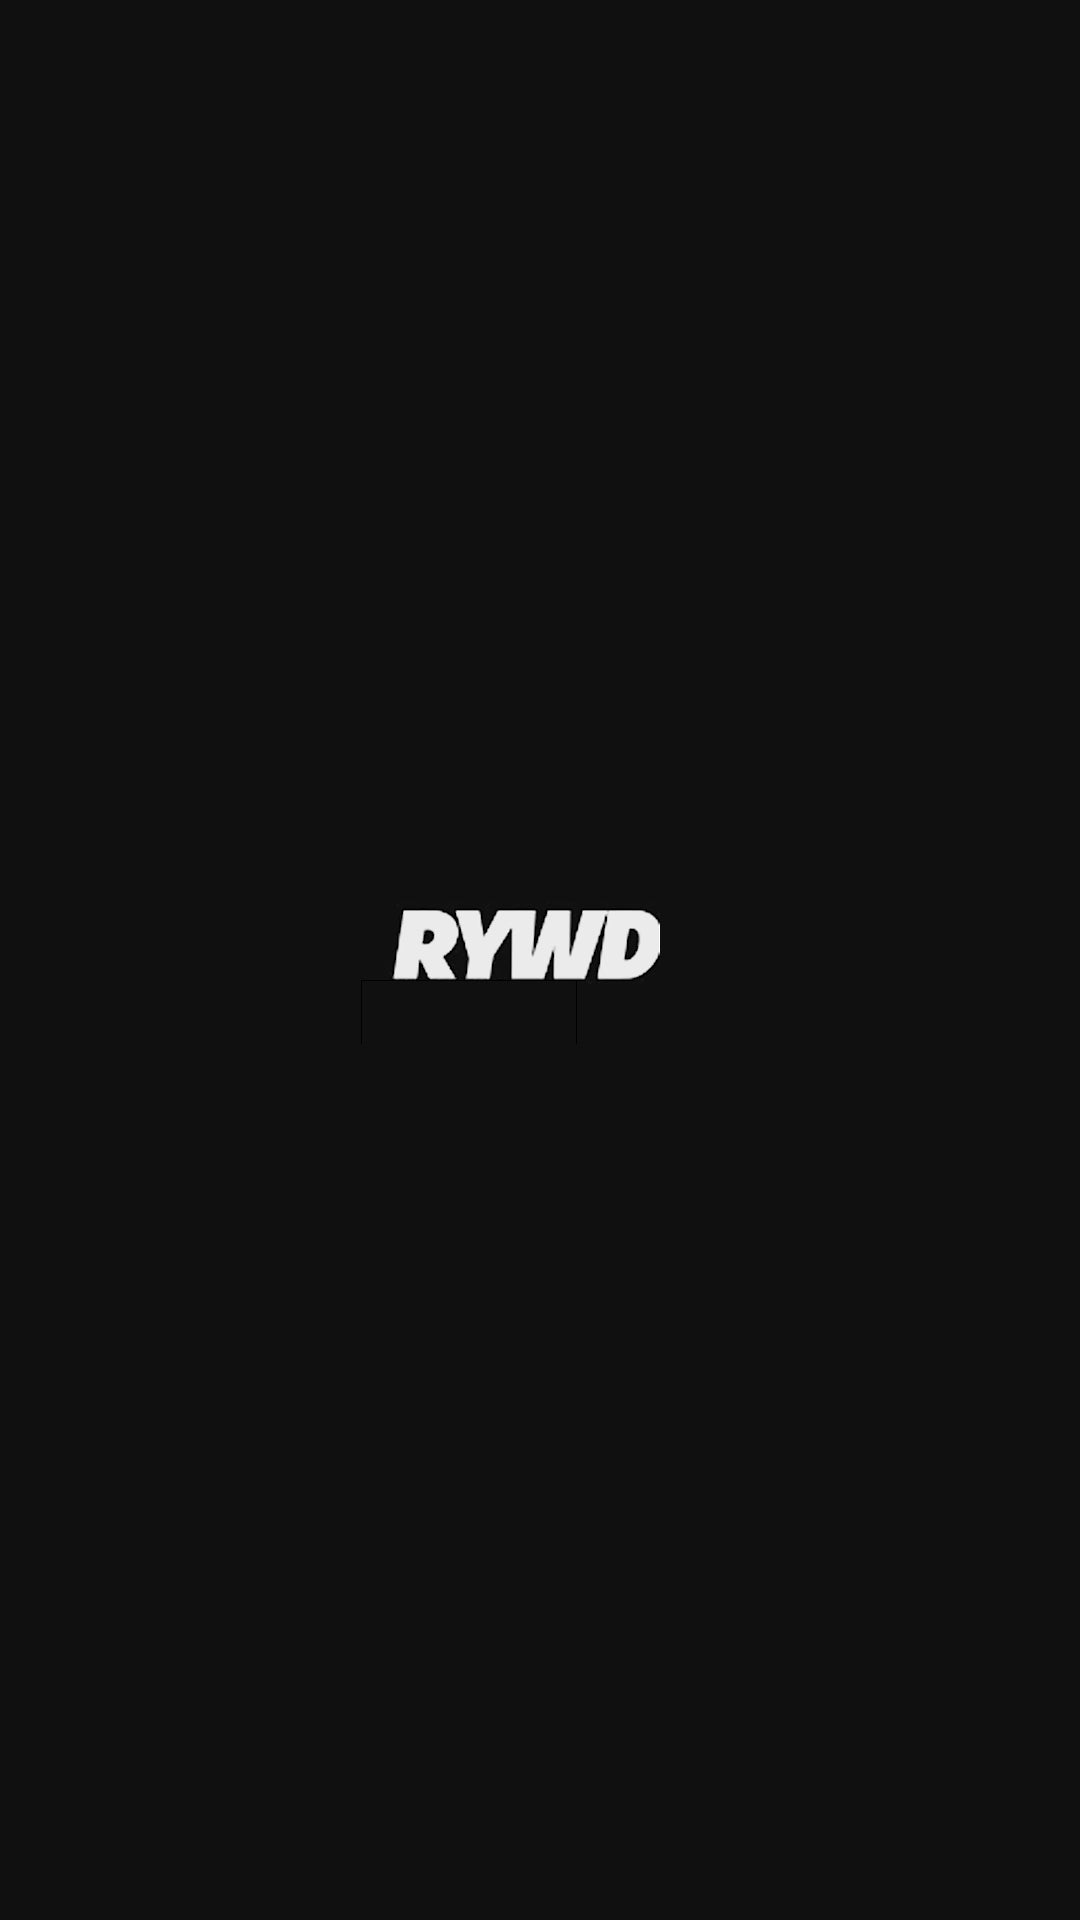 Load video: RYWD Cross Season Video Inside Berlin